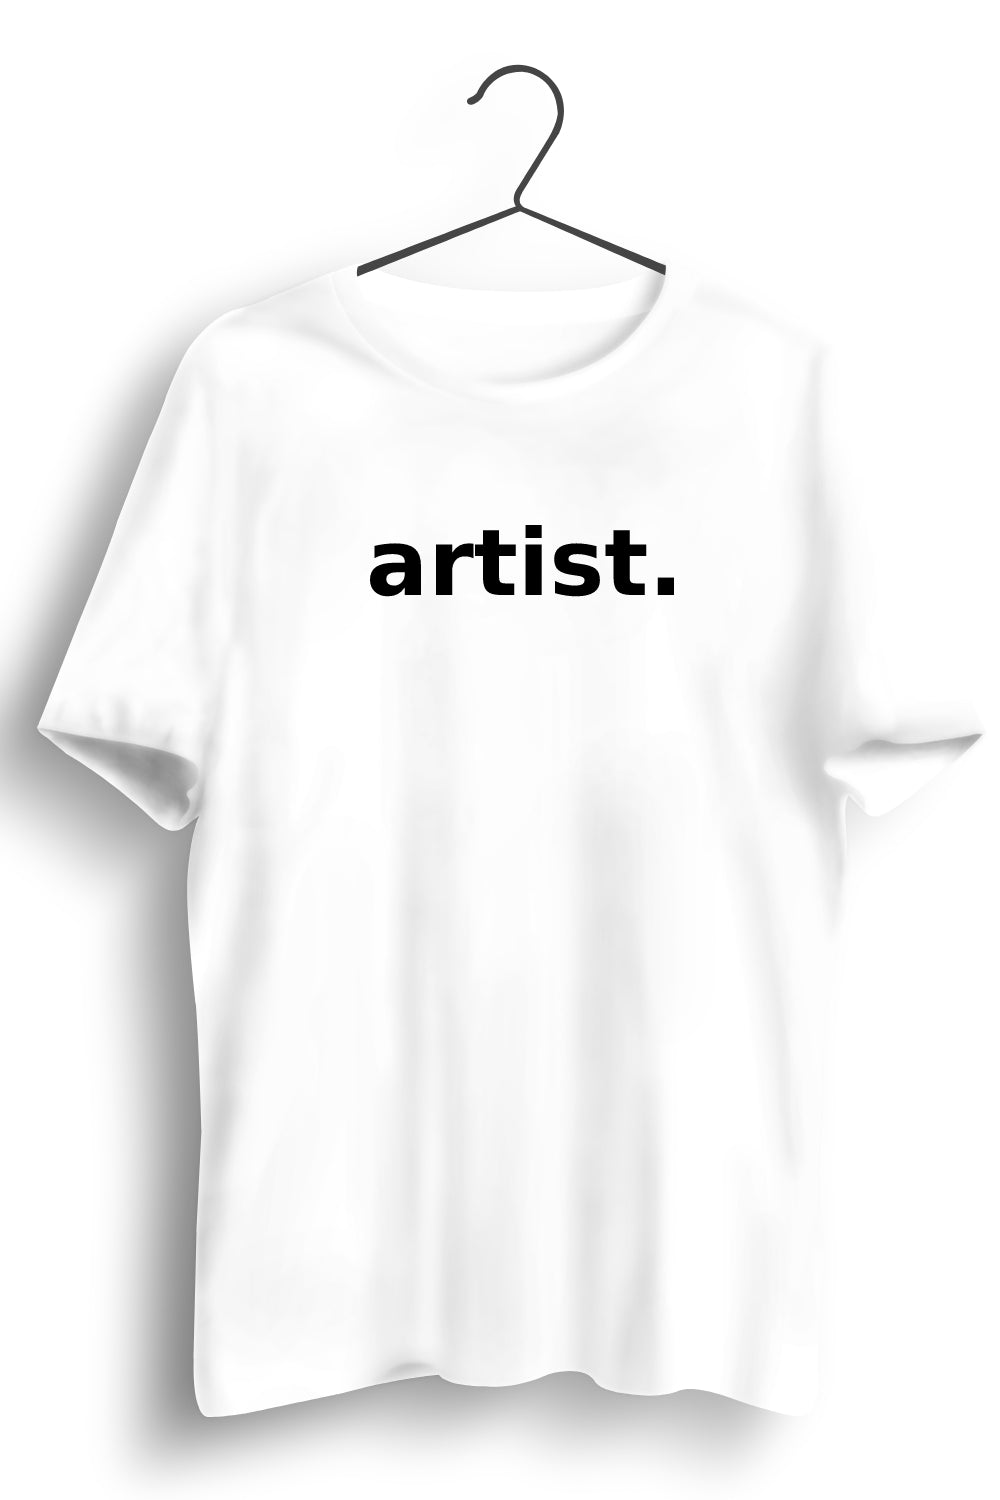 Artist Printed White Tshirt